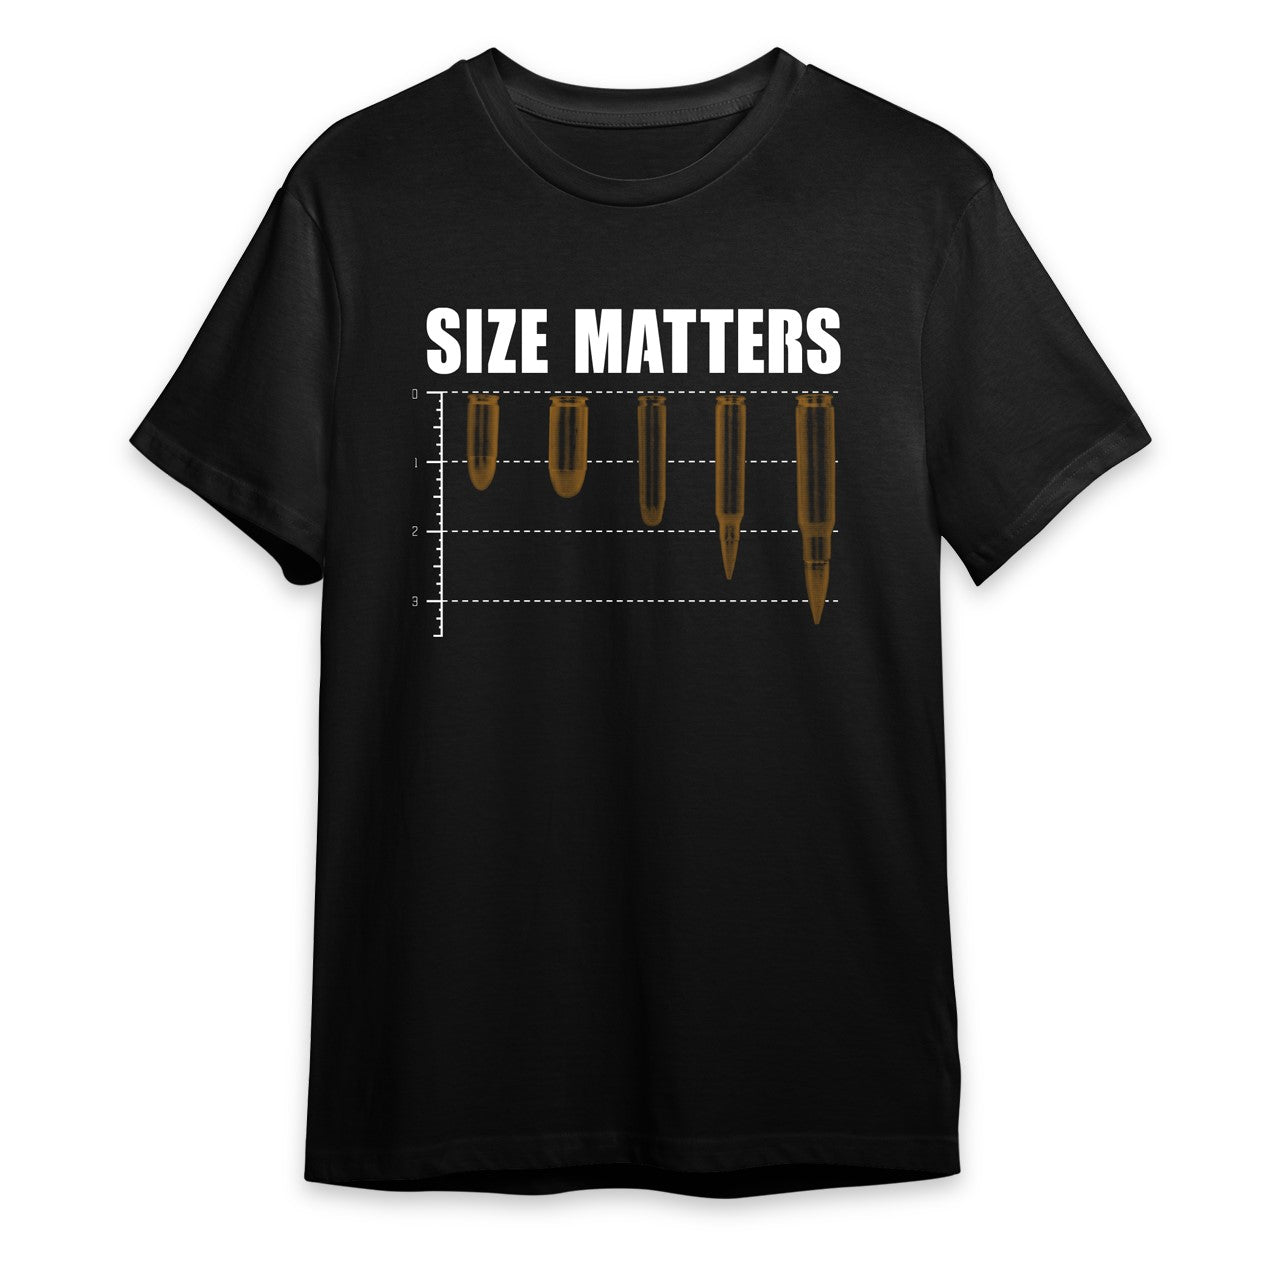 Size Matters Shirt